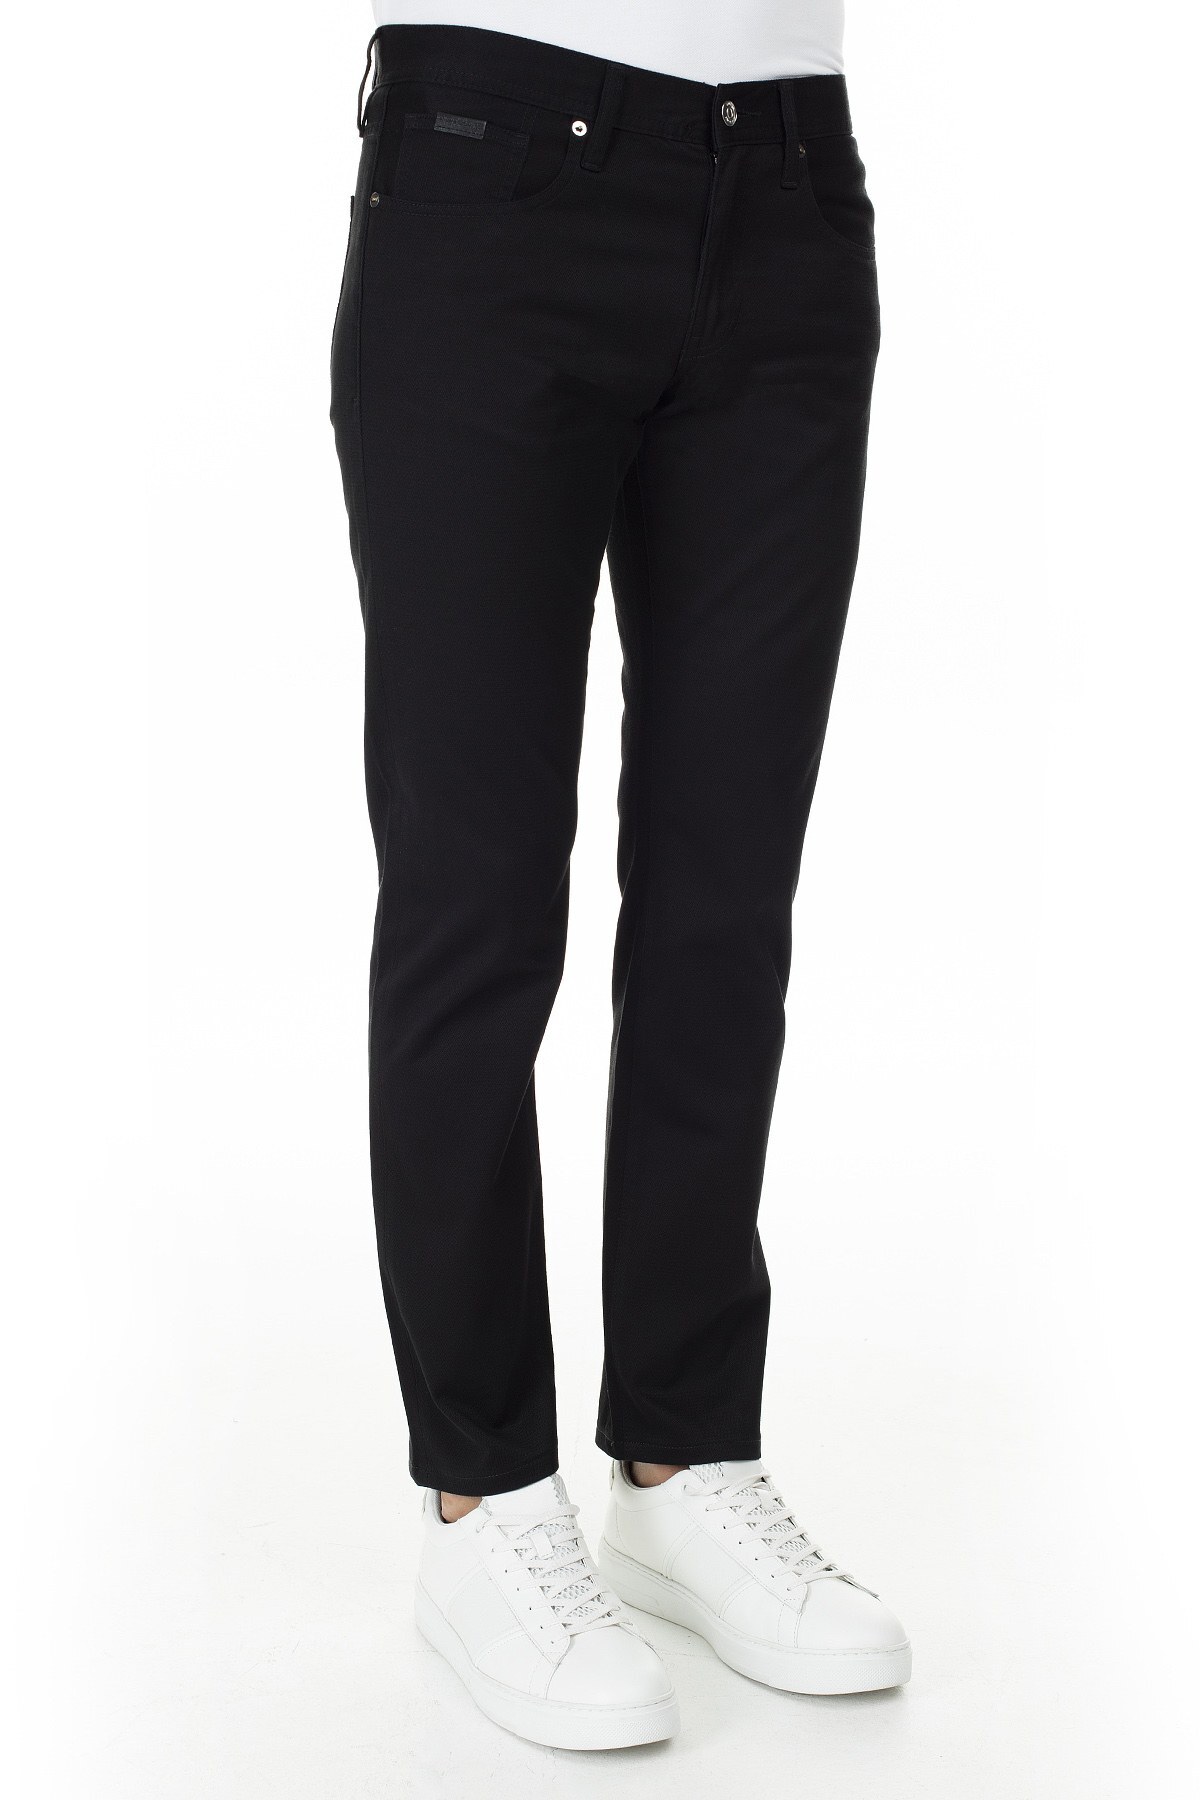 Armani Exchange Slim Fit J13 Jeans Erkek Pamuklu Pantolon 3HZJ13 ZNHBZ 1200 SİYAH